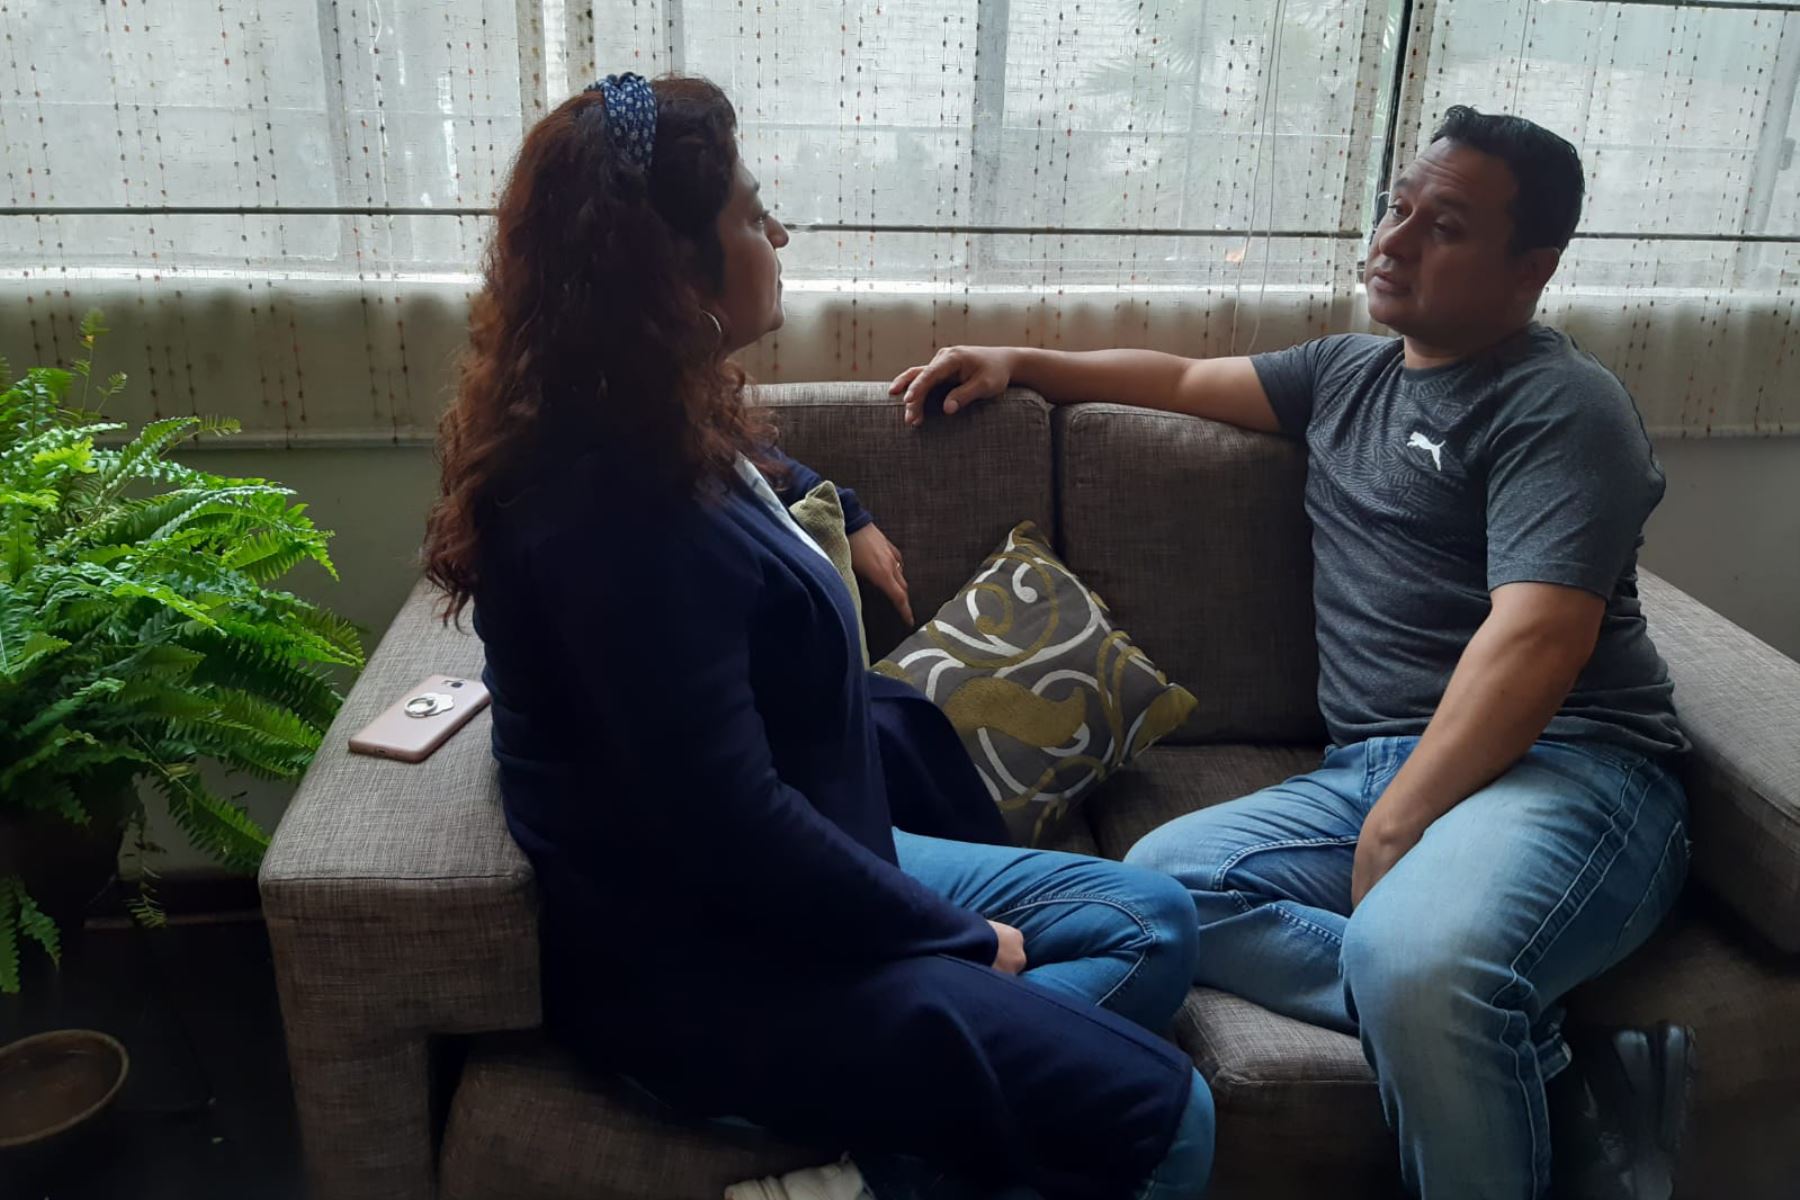 Especialistas recomiendan a las parejas expresar sus emociones de manera asertiva y realizar deporte juntos para consolidar su relación.  ANDINA/ Andina